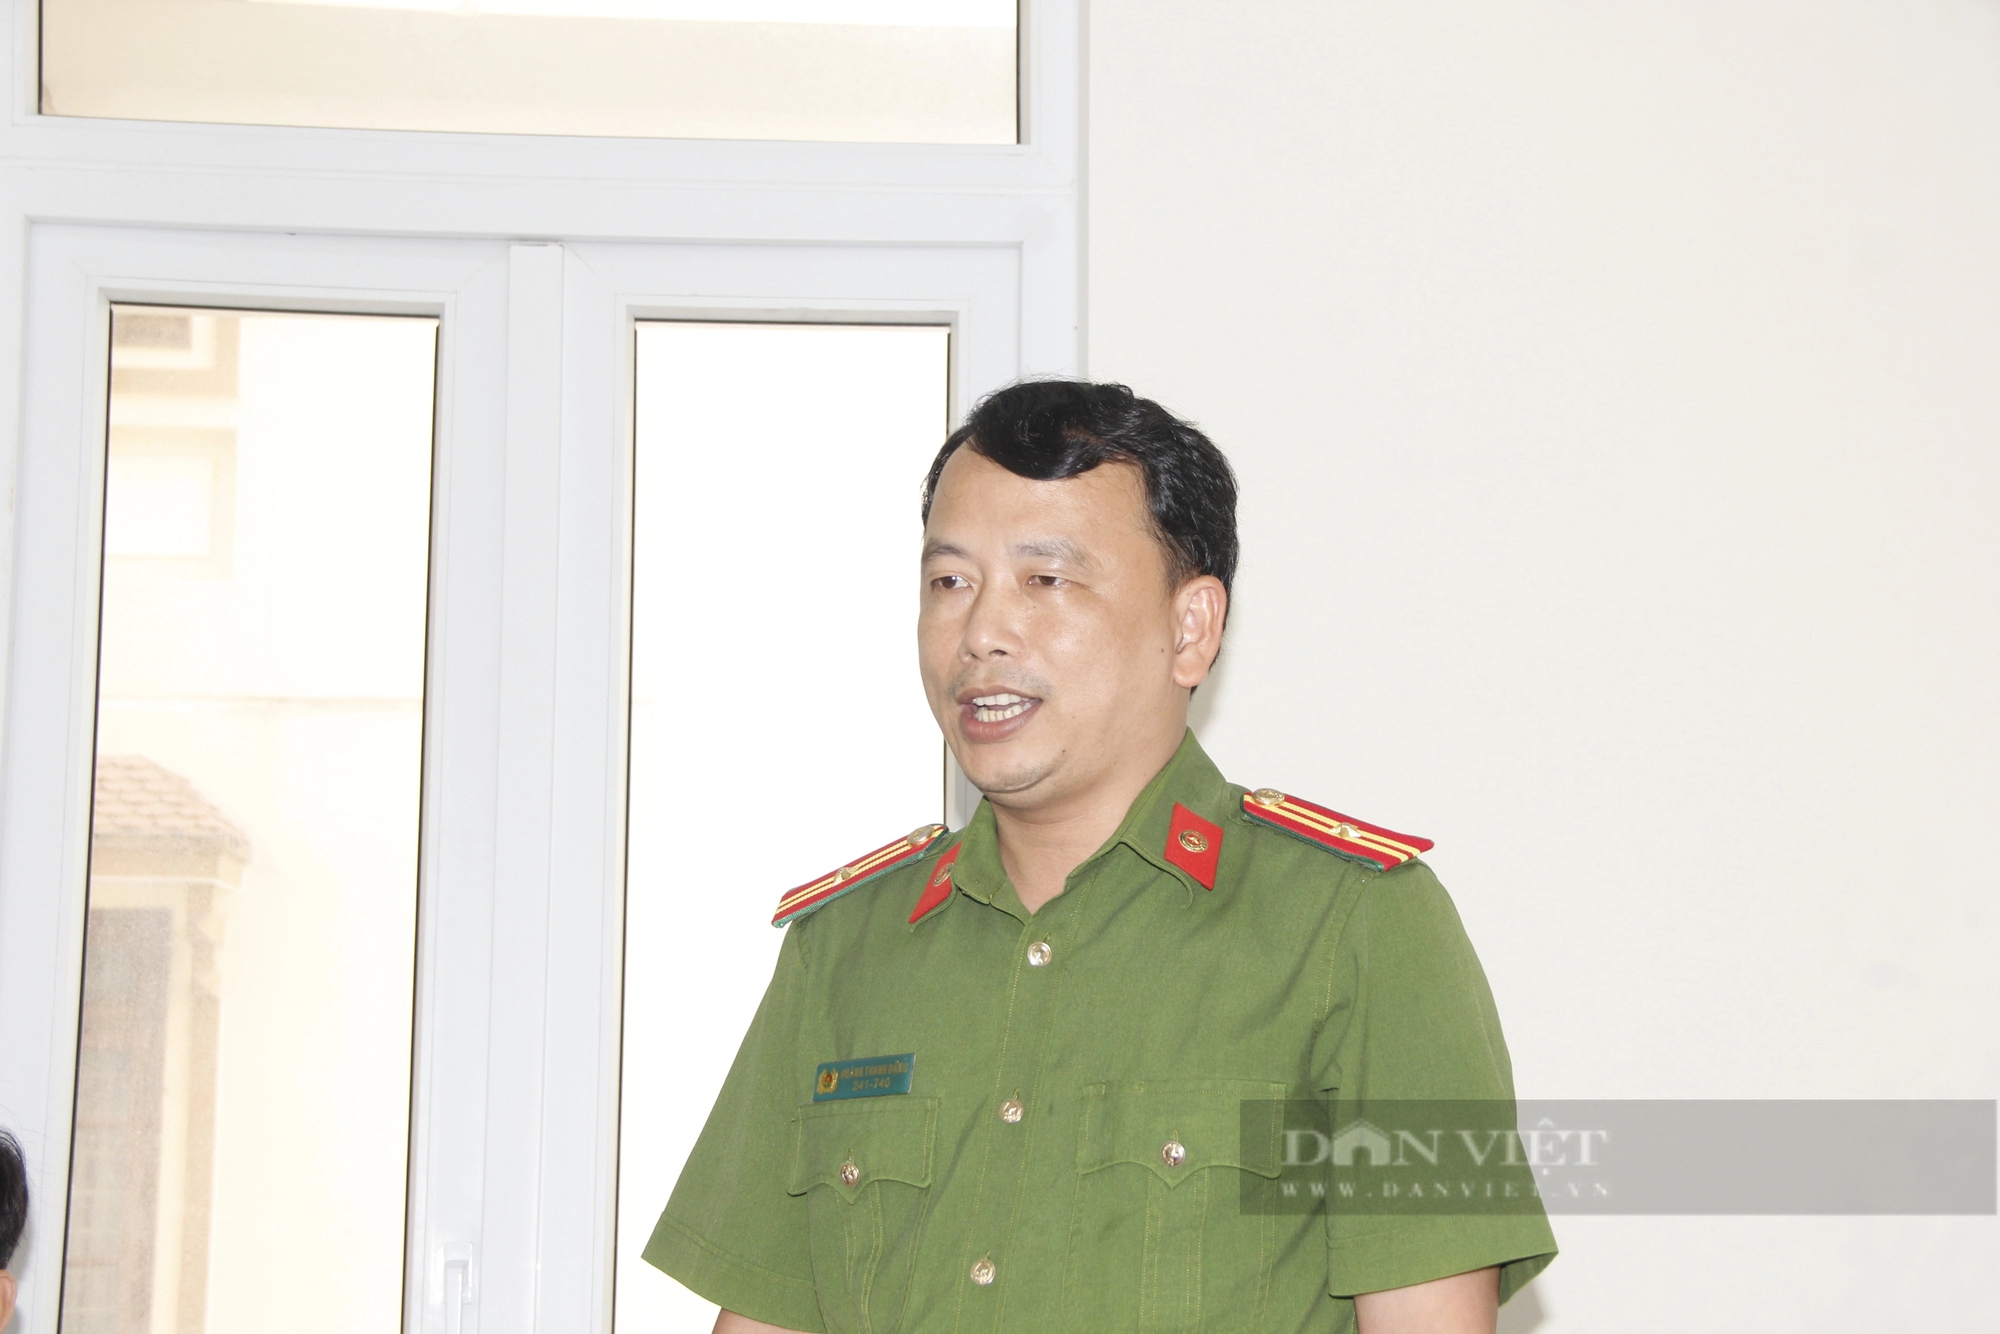 Vụ trại heo xả thải trái phép ở Quảng Trị, chủ trại nói do bất cẩn: Đề xuất UBND tỉnh ra quyết định xử phạt- Ảnh 5.